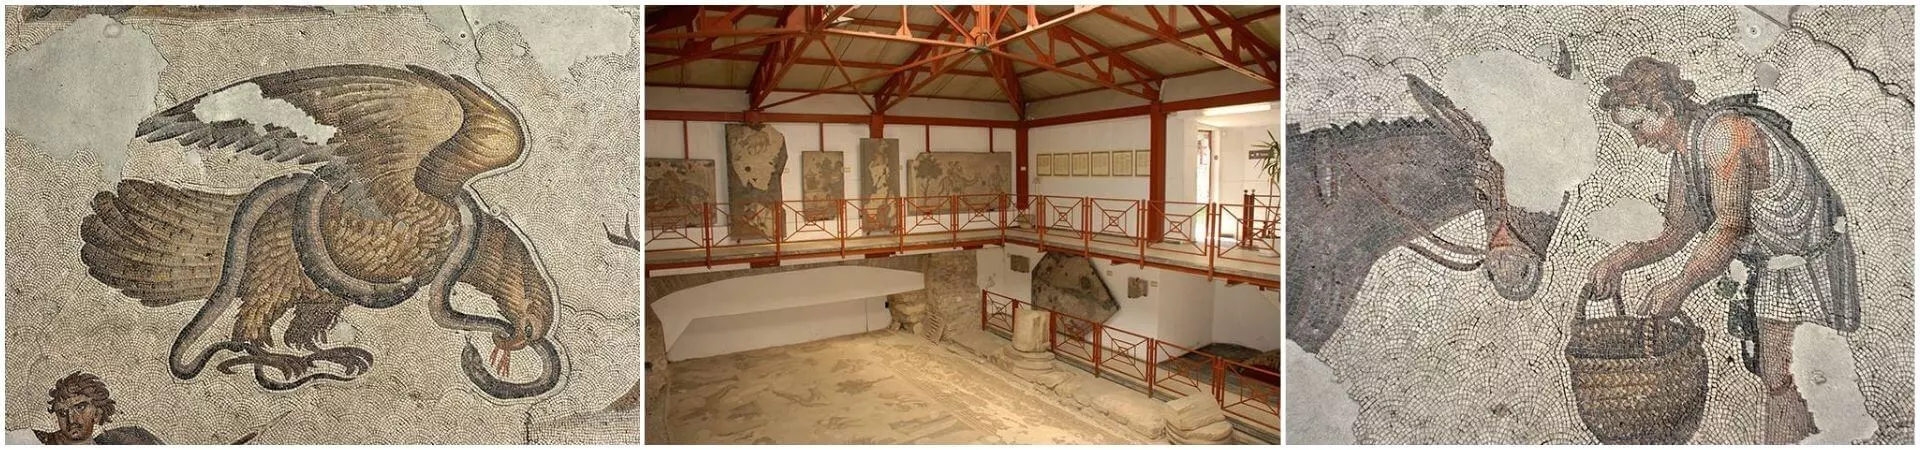 مدخل متحف القصر الكبير للفسيفساء